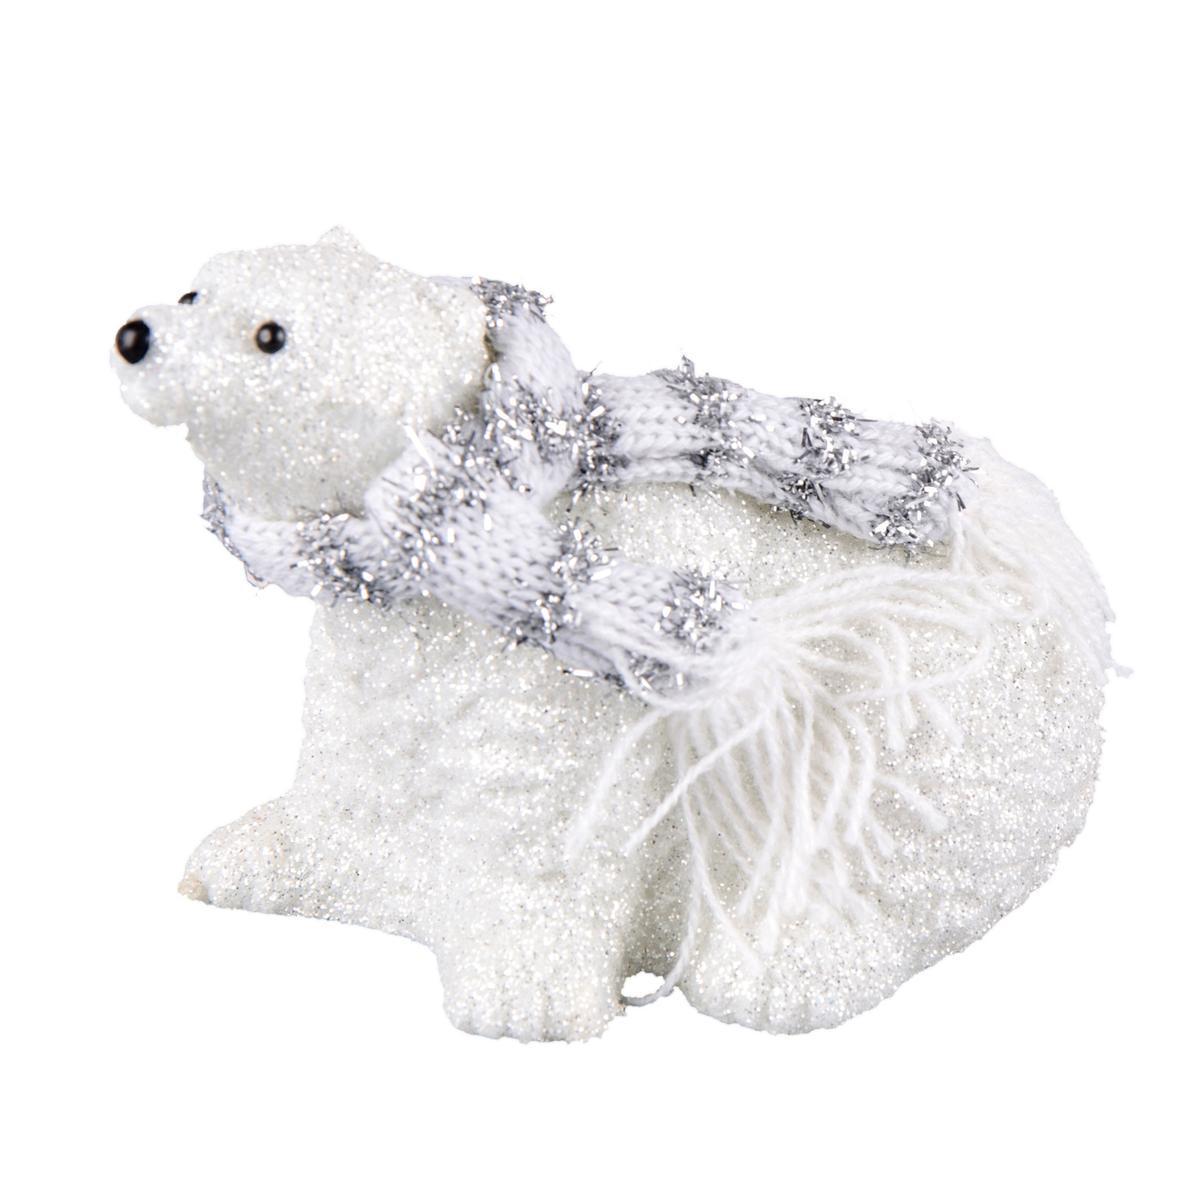 Suspension ours polaire à écharpe - 7 x 10.5 x 7 cm - Blanc